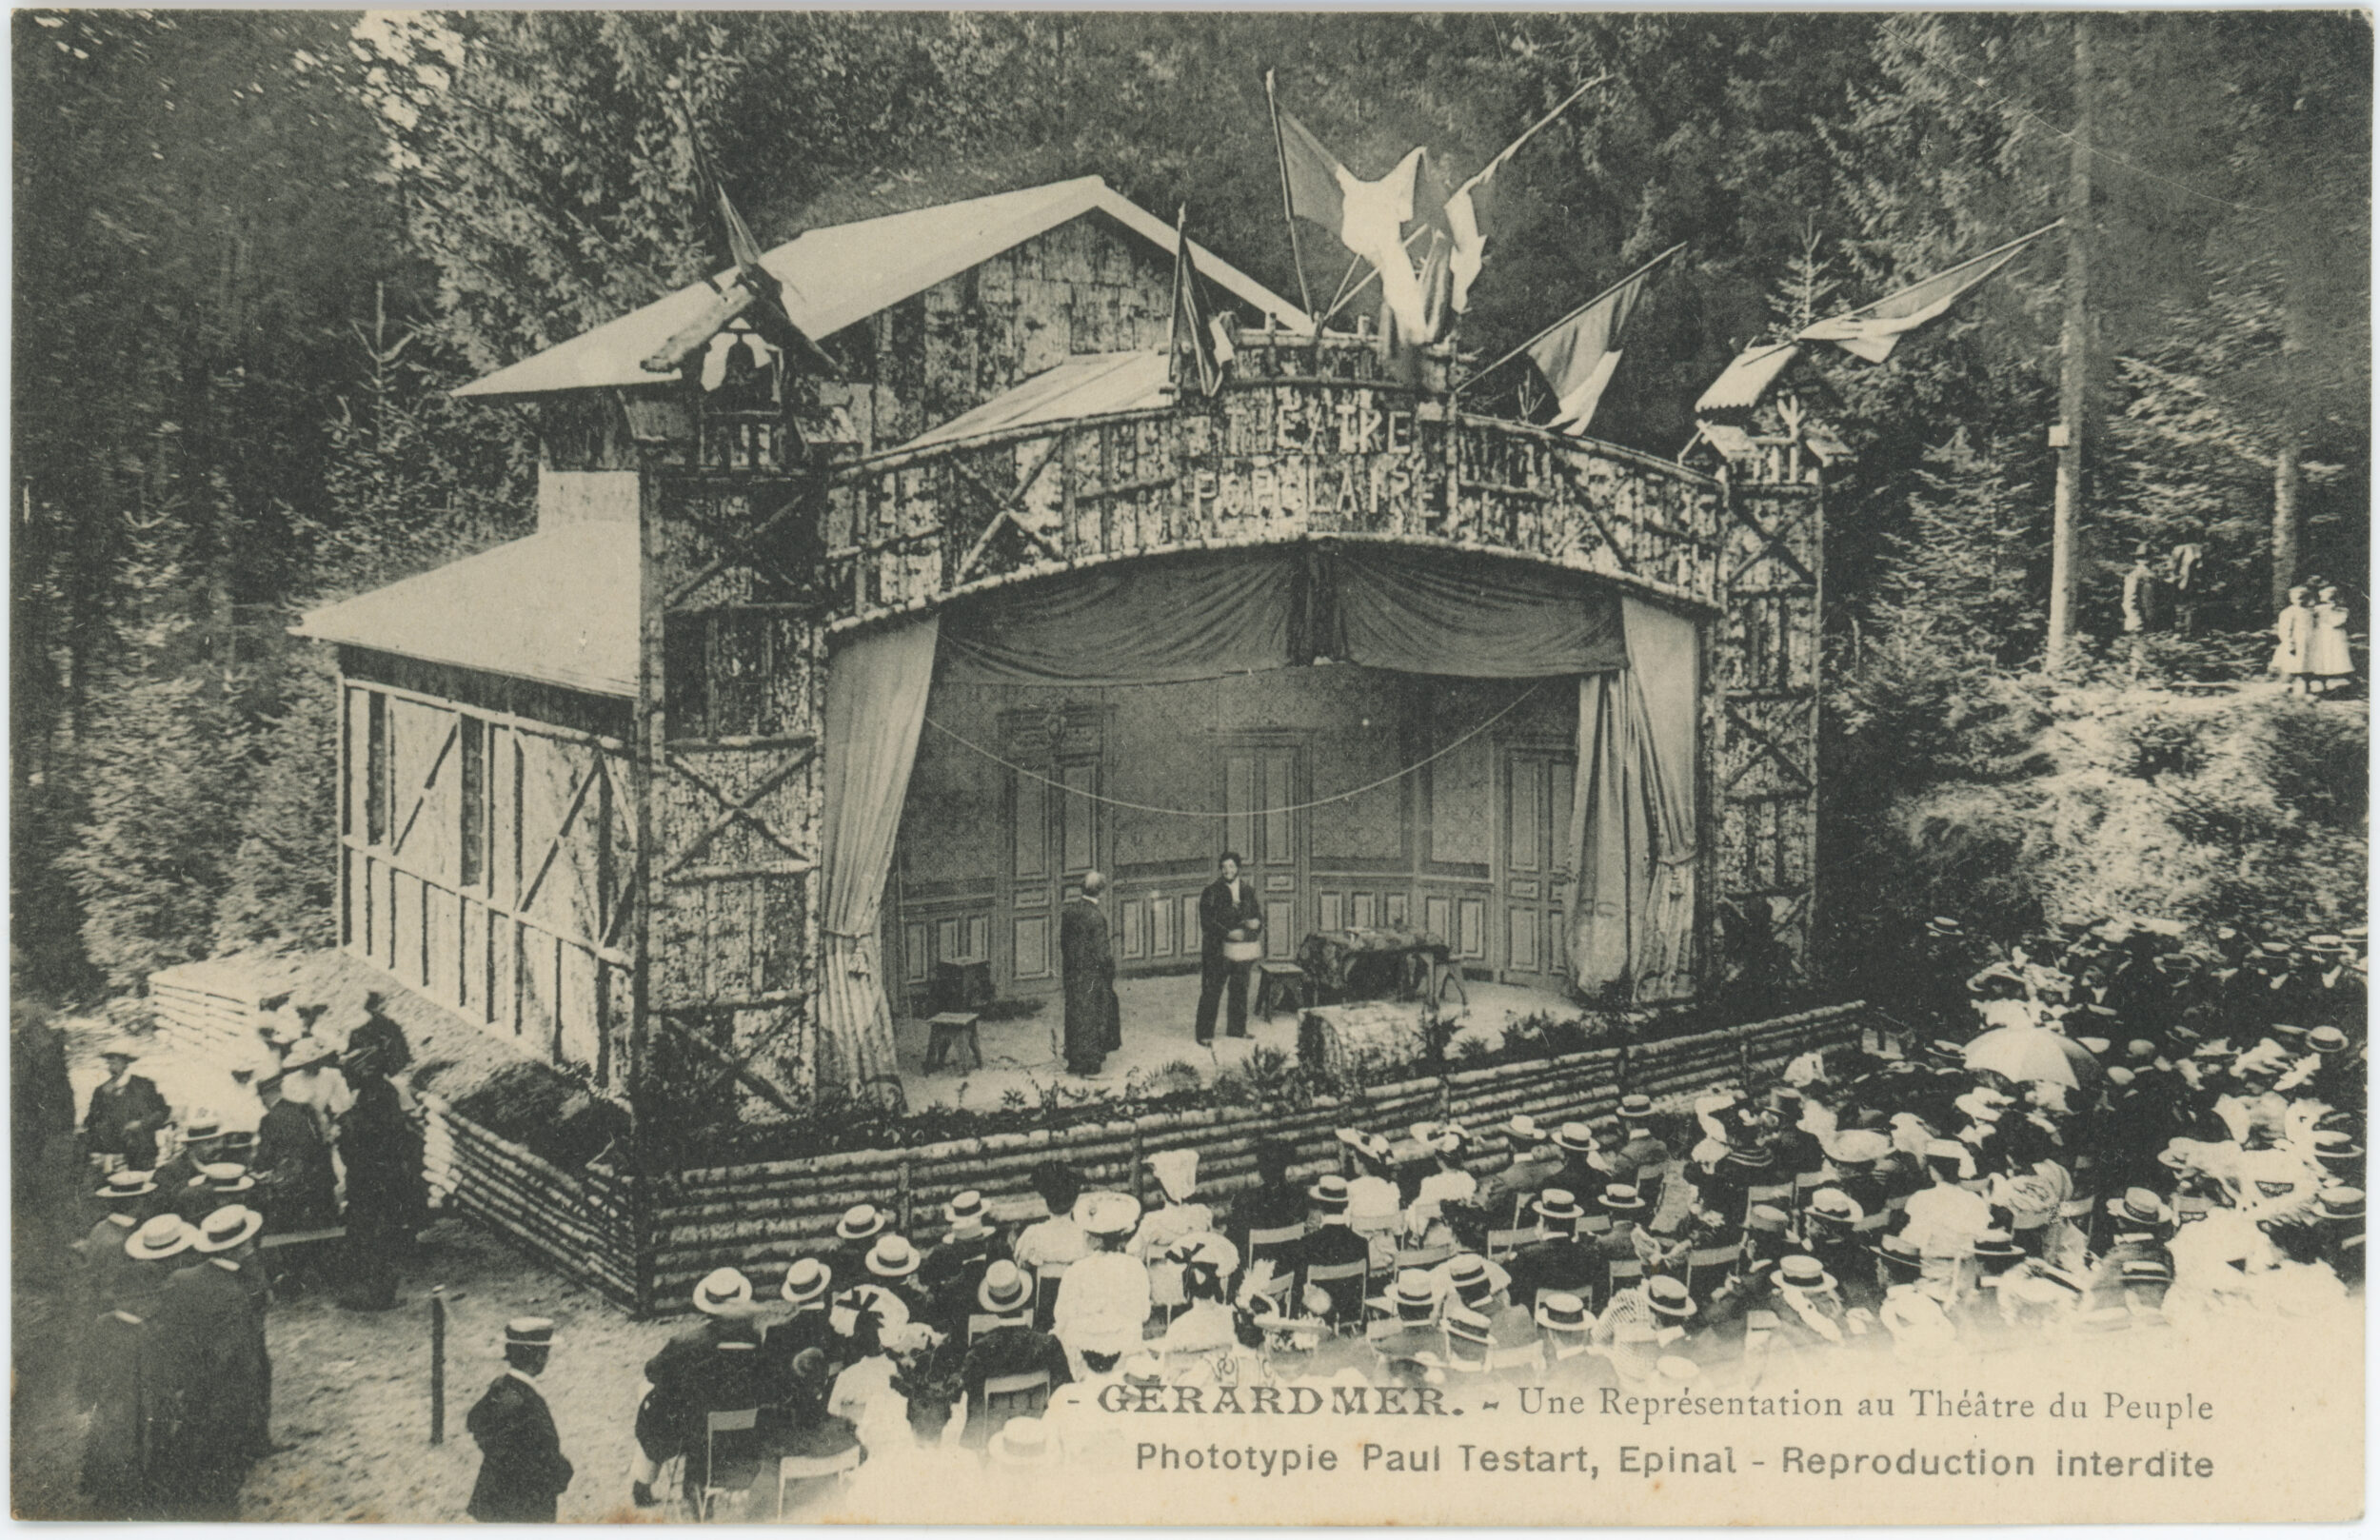 « 111. — Gérardmer. — Une Représentation au Théâtre du Peuple ». Carte postale illustrée, édition et phototypie réalisées par Paul Testart à Épinal